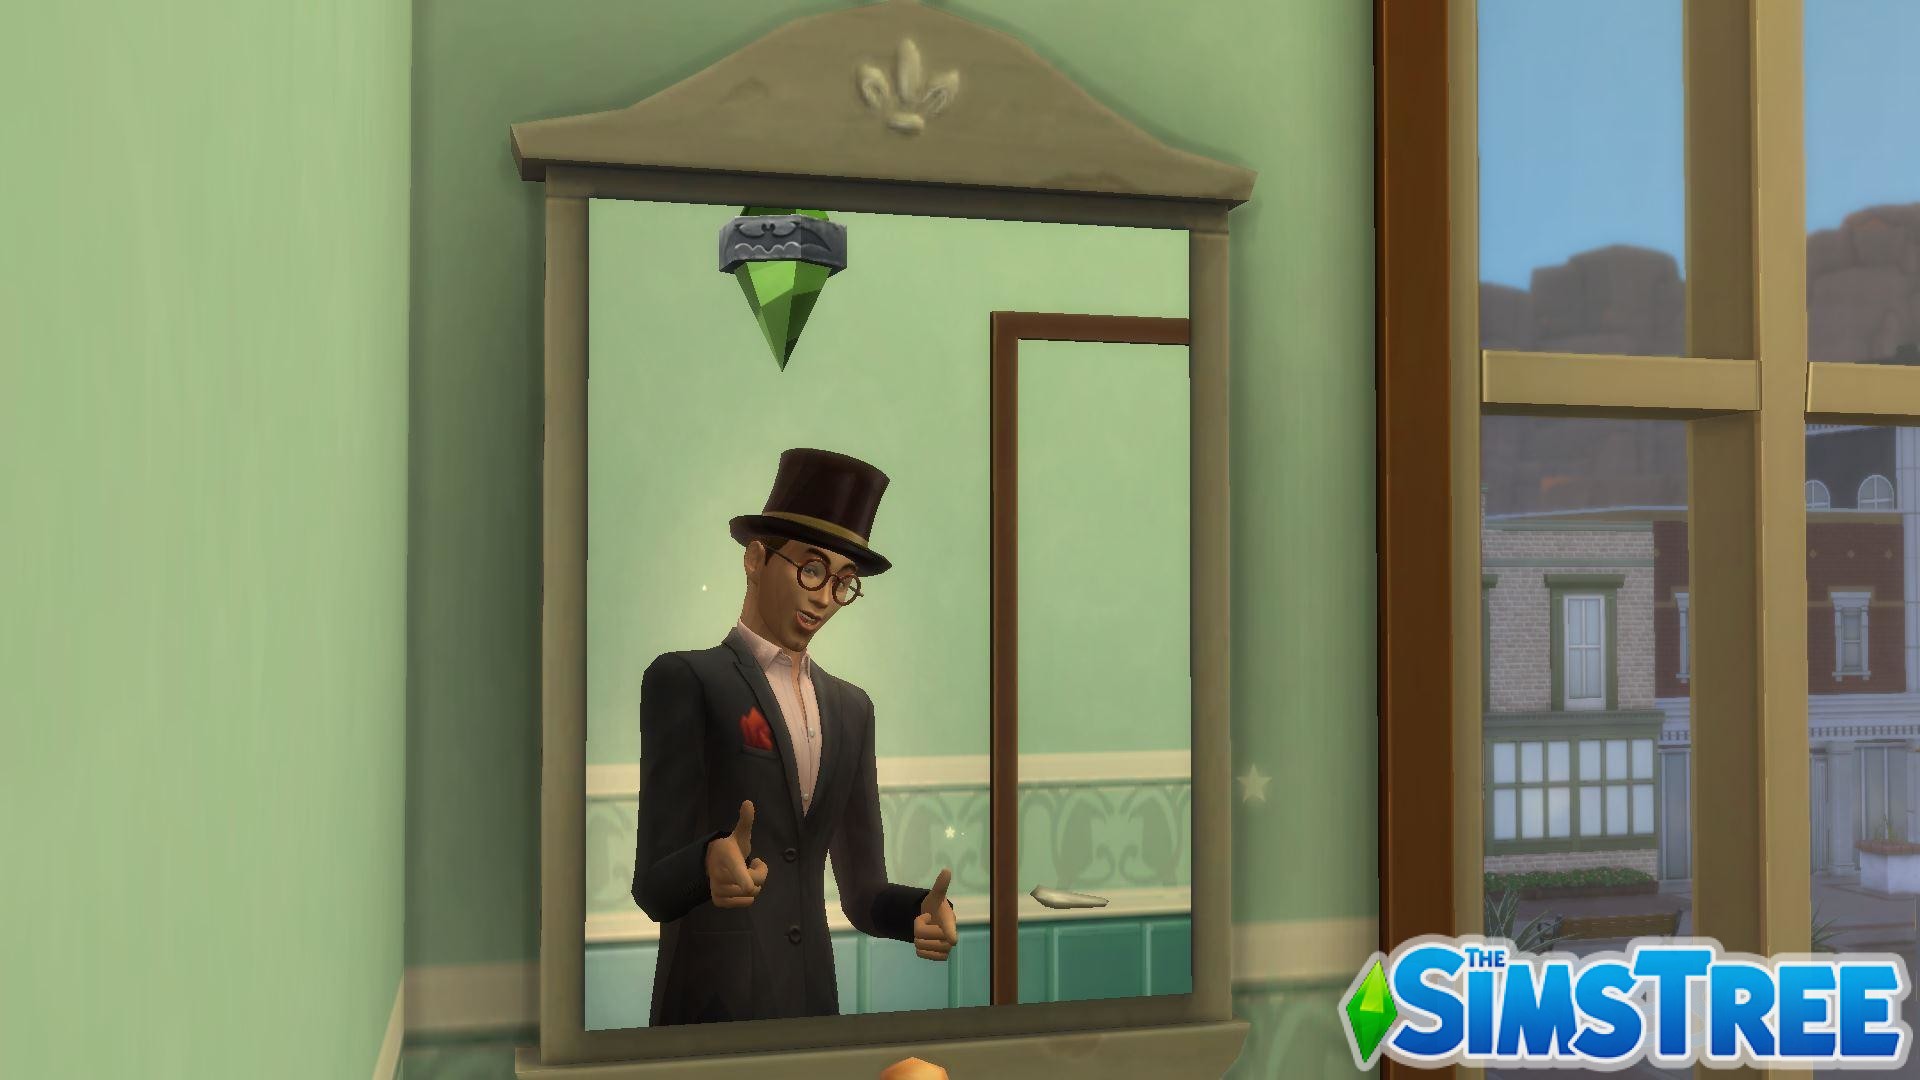 Мод «Управление отражением вампиров в зеркале» от TwelfthDoctor1 для Sims 4